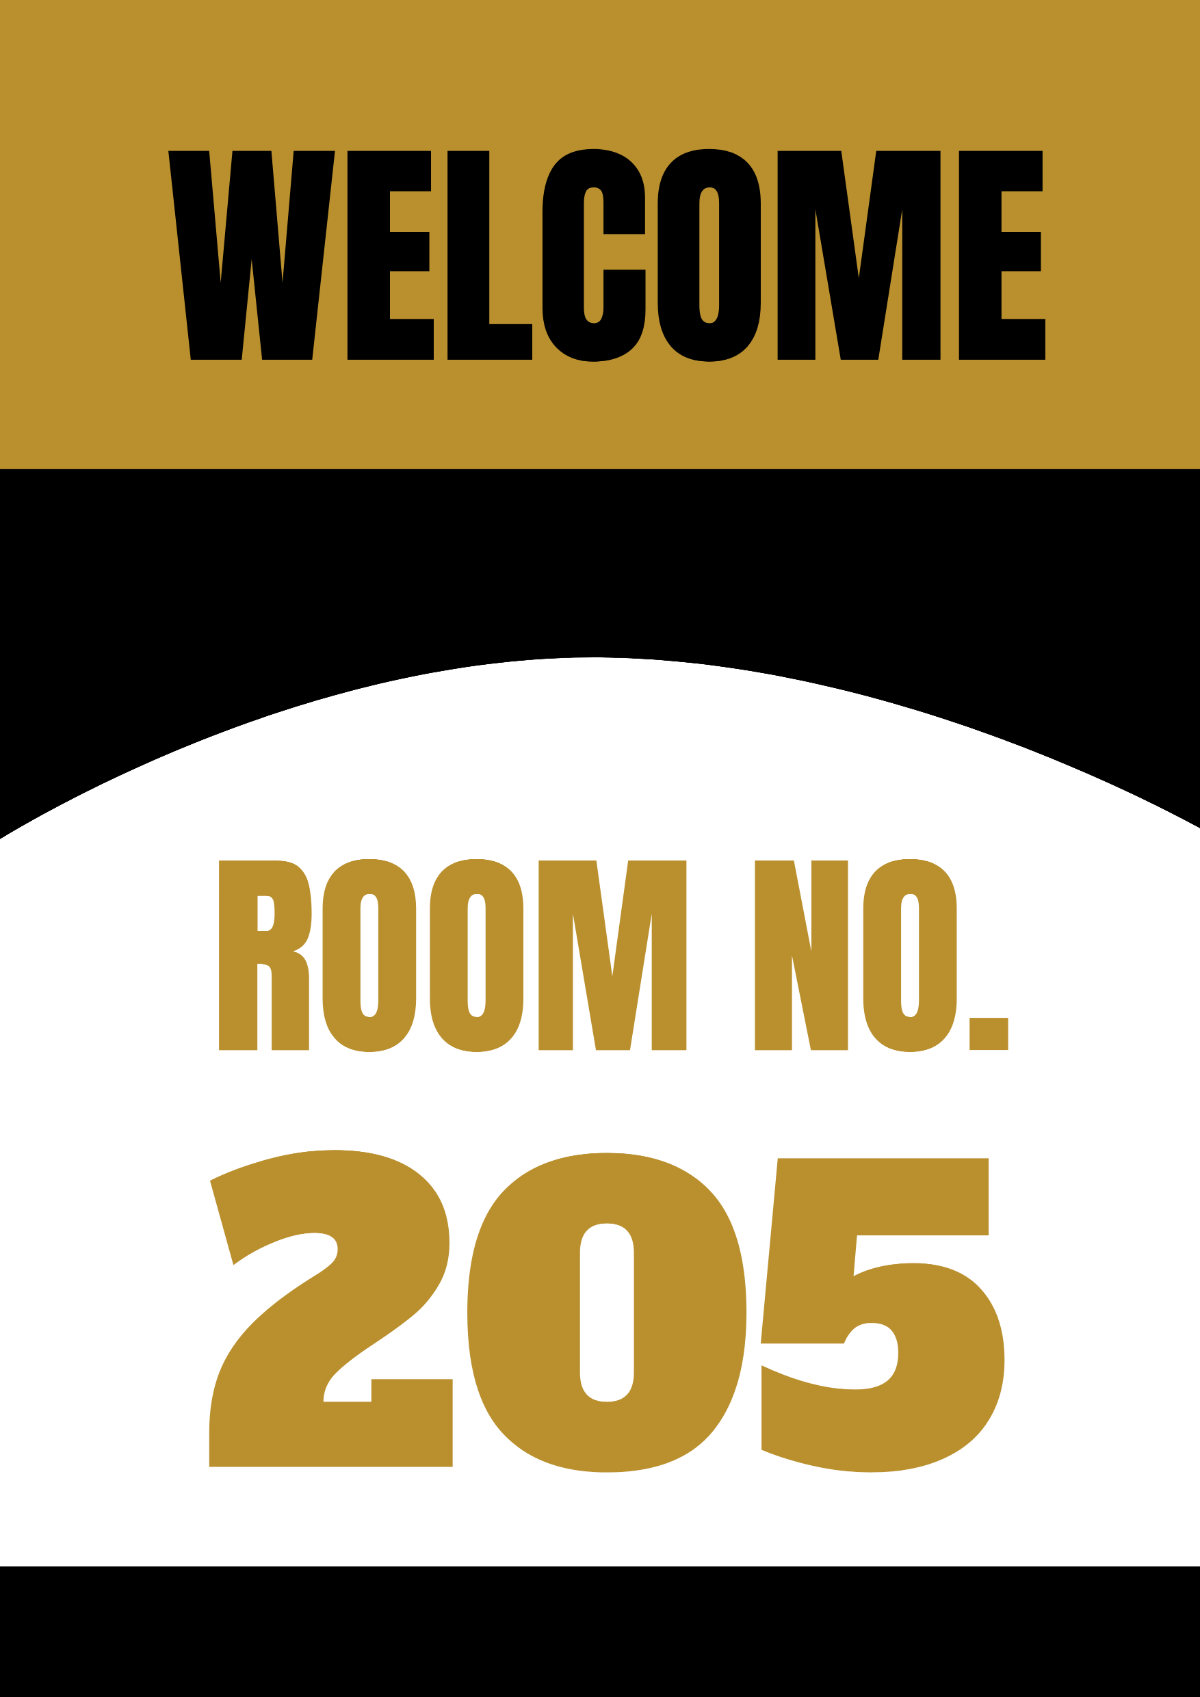 Hotel Room Number Signage